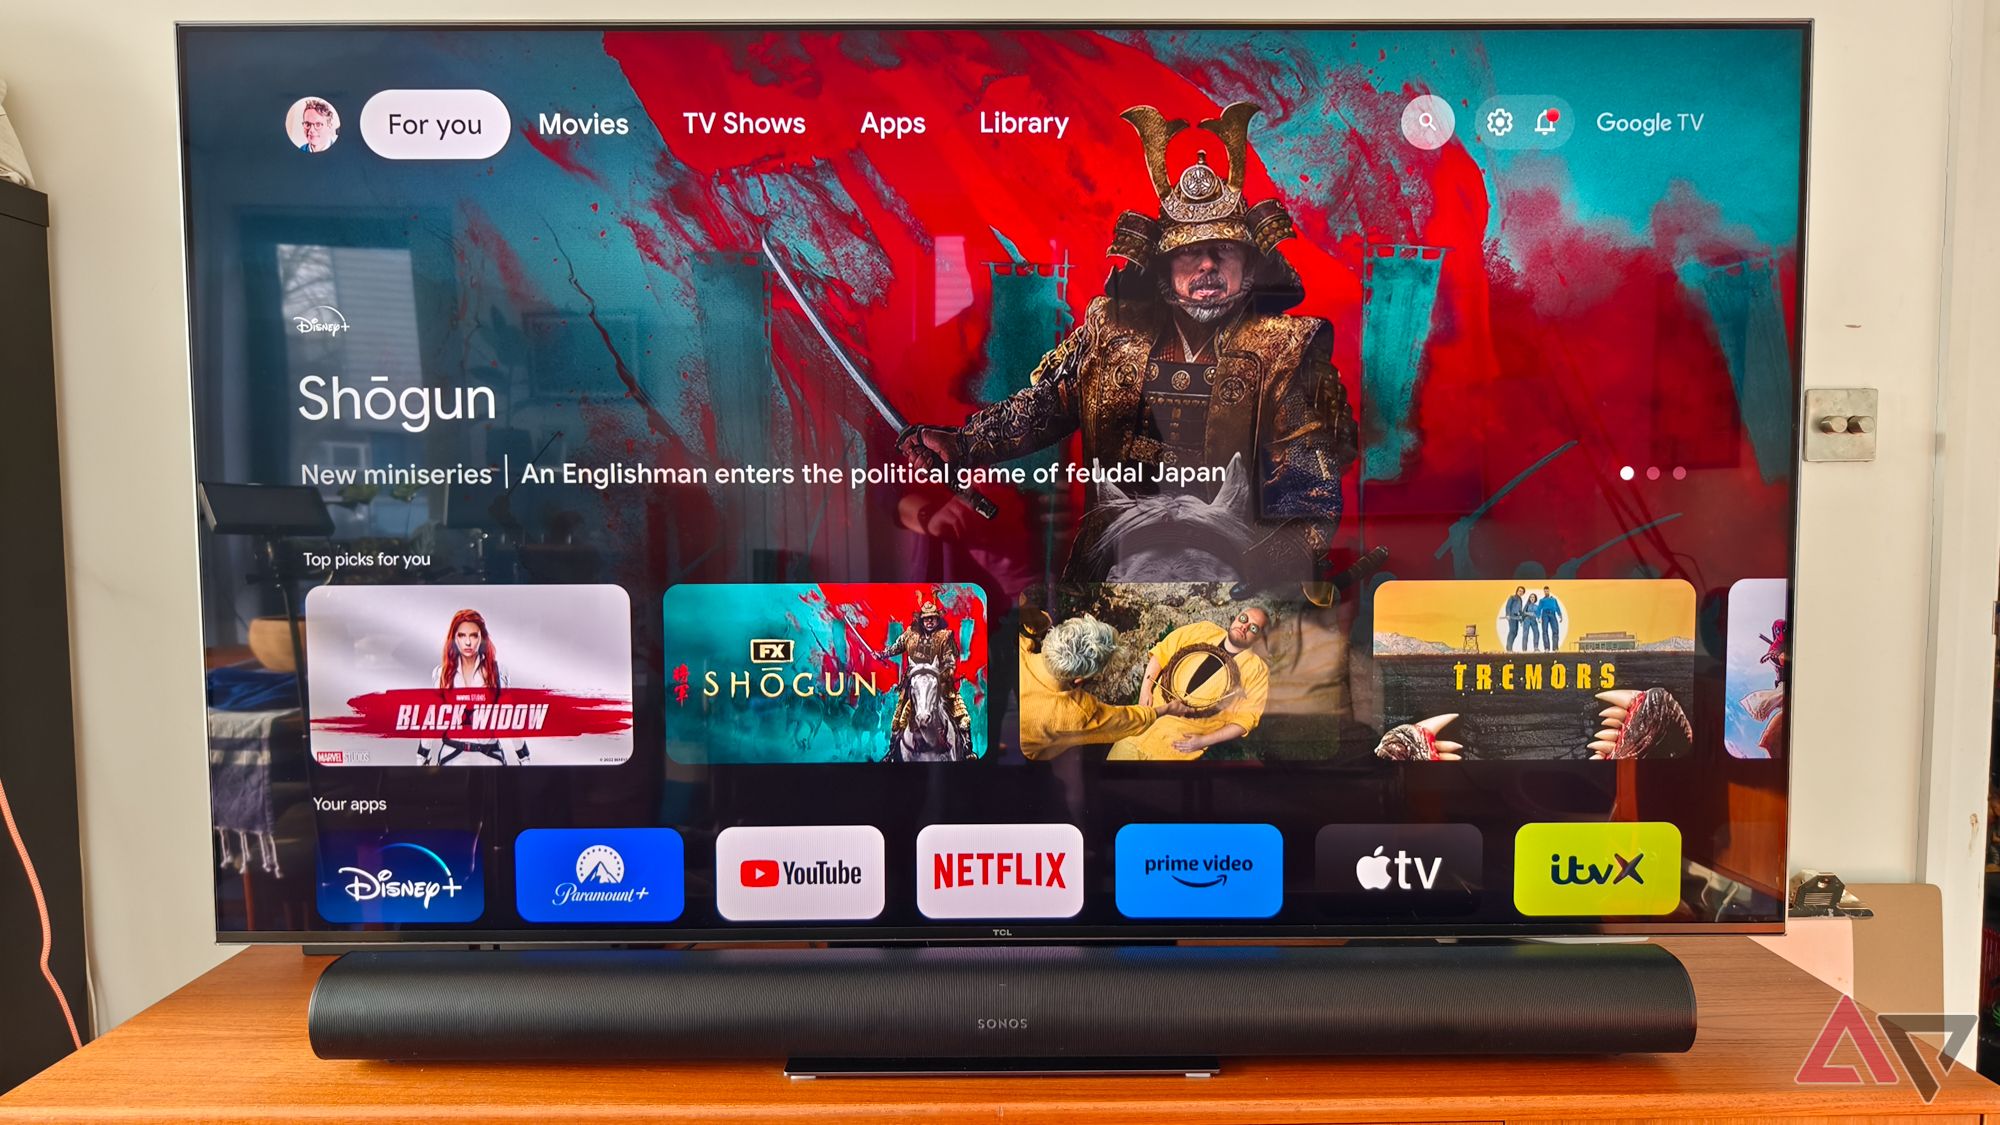 Uma foto frontal de uma barra de som Sonos Arc preta em um suporte de TV de teca abaixo de uma TV TCL. A TV está mostrando a tela inicial do Google TV com um grande anúncio da série de TV Shogun